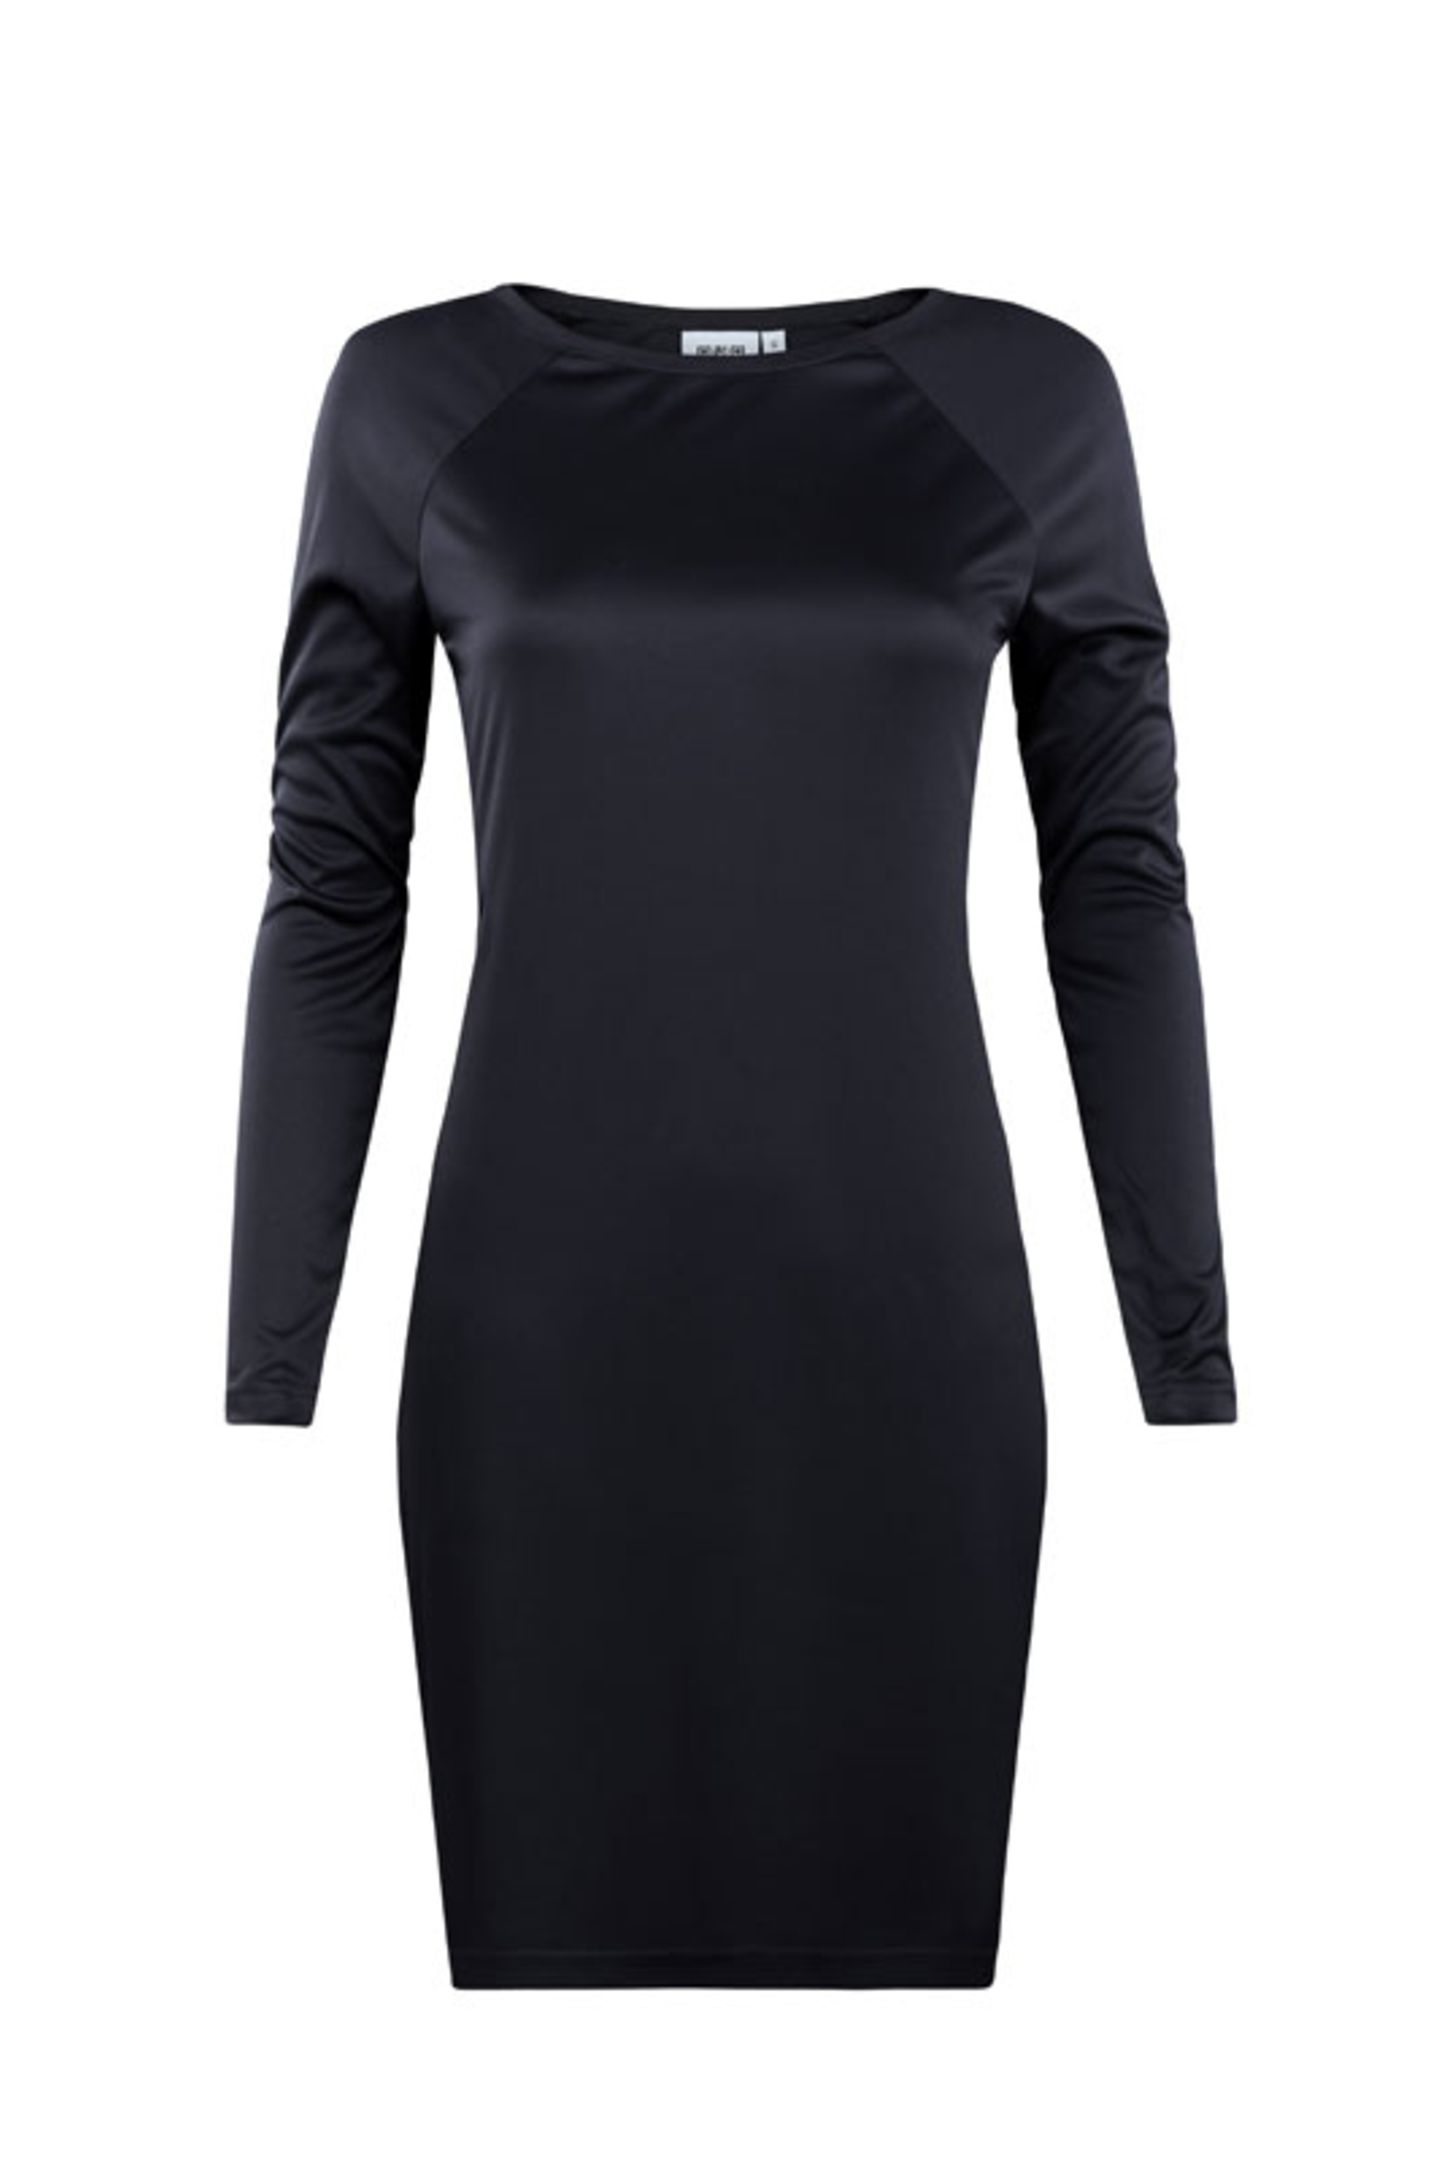 Seidig glänzendes Kleid mit raffiniertem Rückenausschnitt aus recyceltem Polyester, rund 100 Euro.